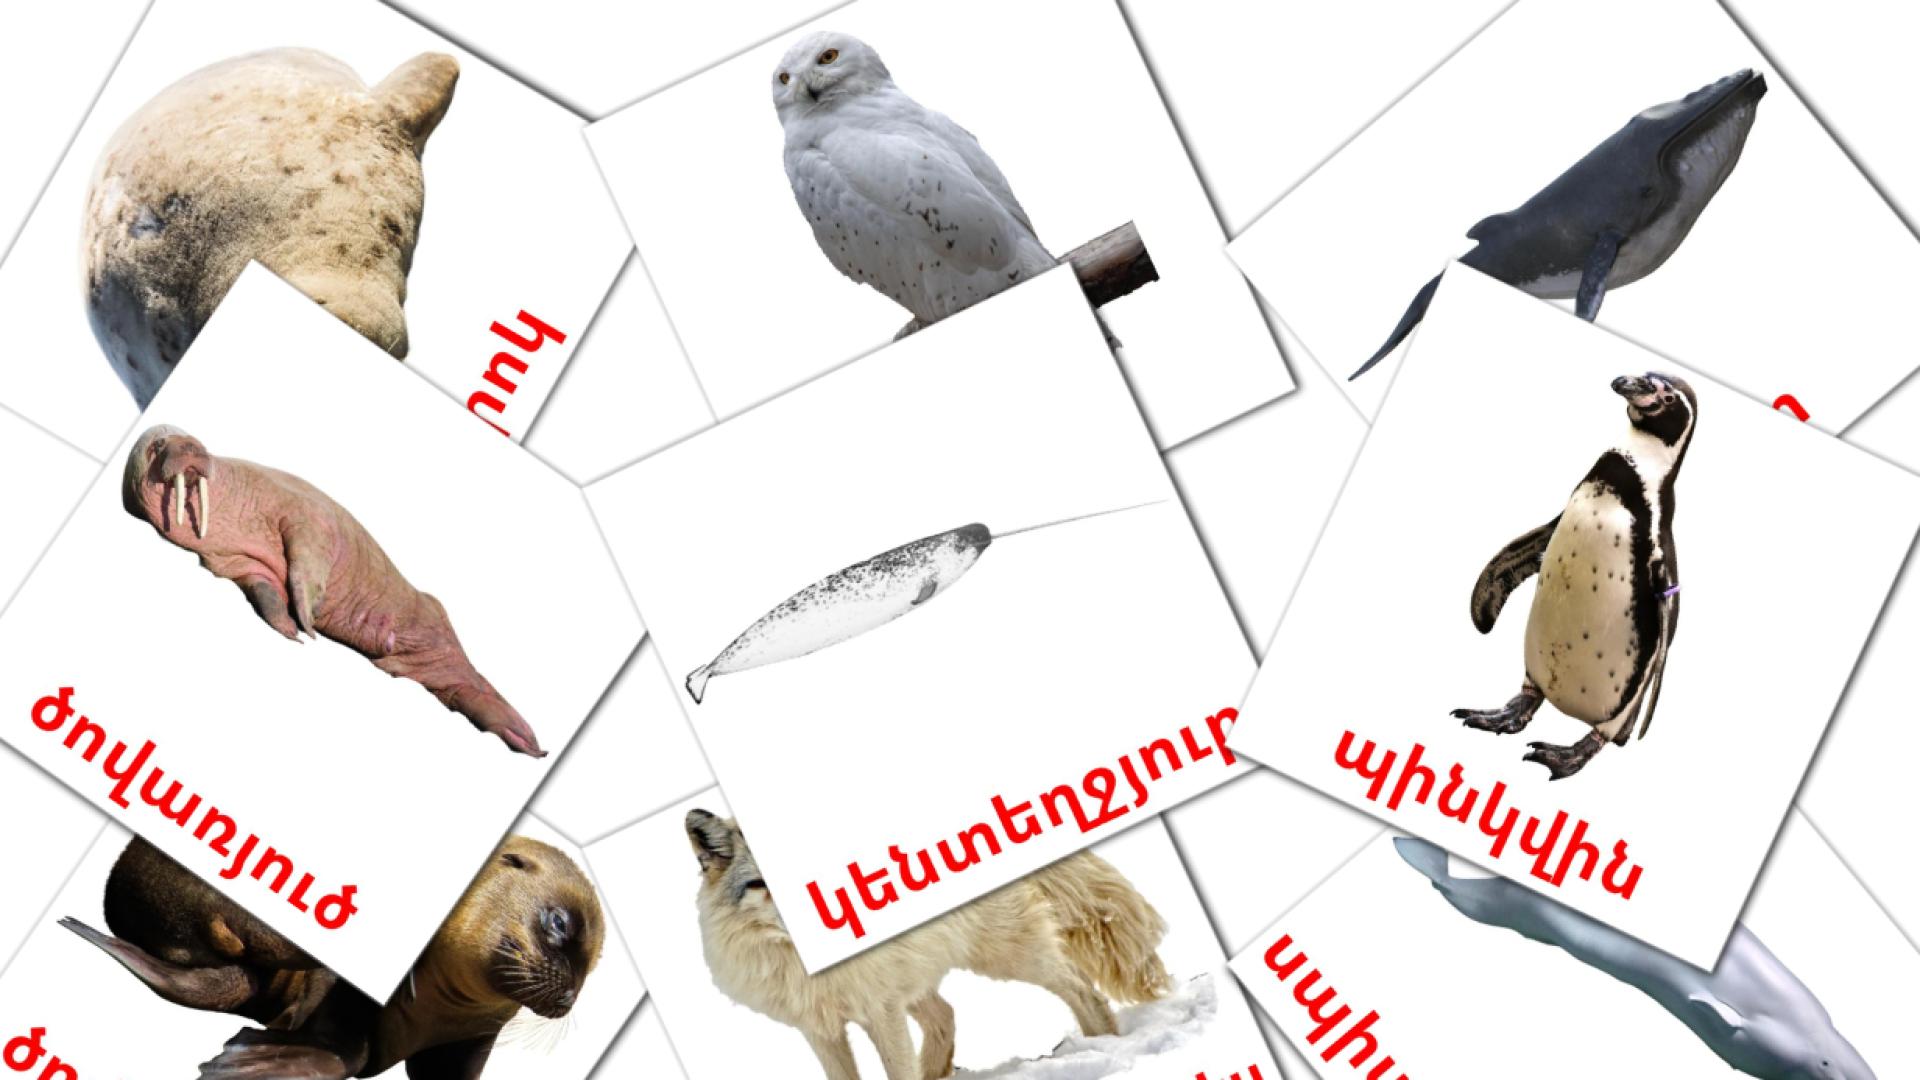 Animali artici - Schede di vocabolario armeno